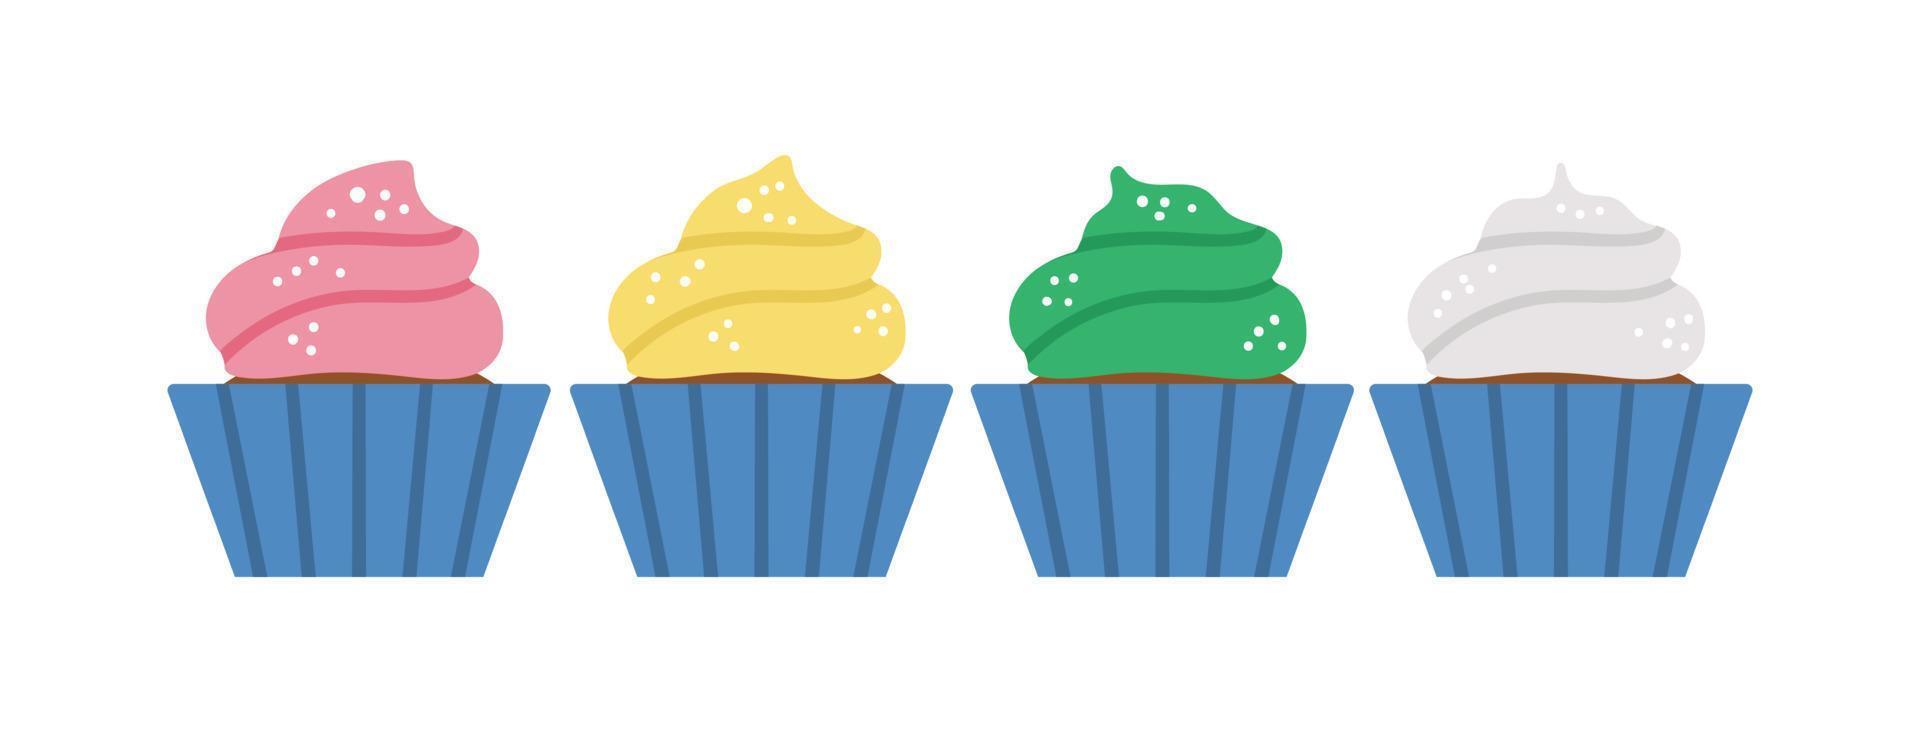 vector verjaardagsdesserts. leuke grappige viering cupcakes illustratie voor kaart, poster, print design. helder vakantieconcept voor kinderen met veel gekleurde muffins.